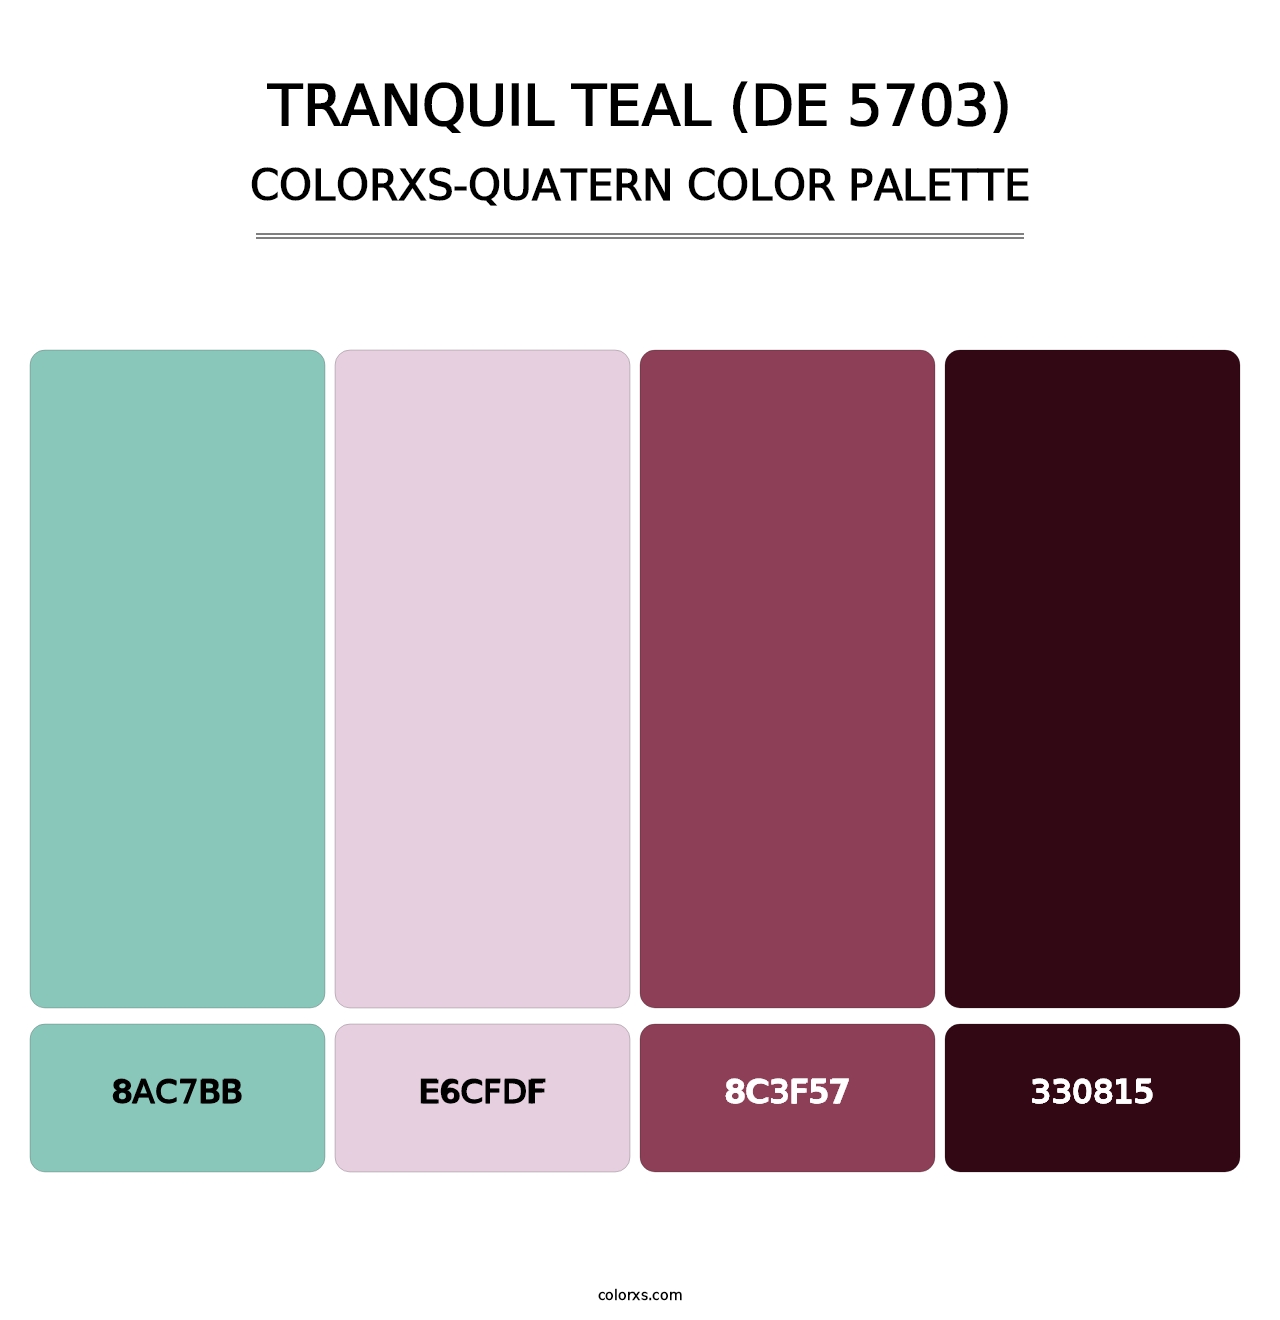 Tranquil Teal (DE 5703) - Colorxs Quatern Palette